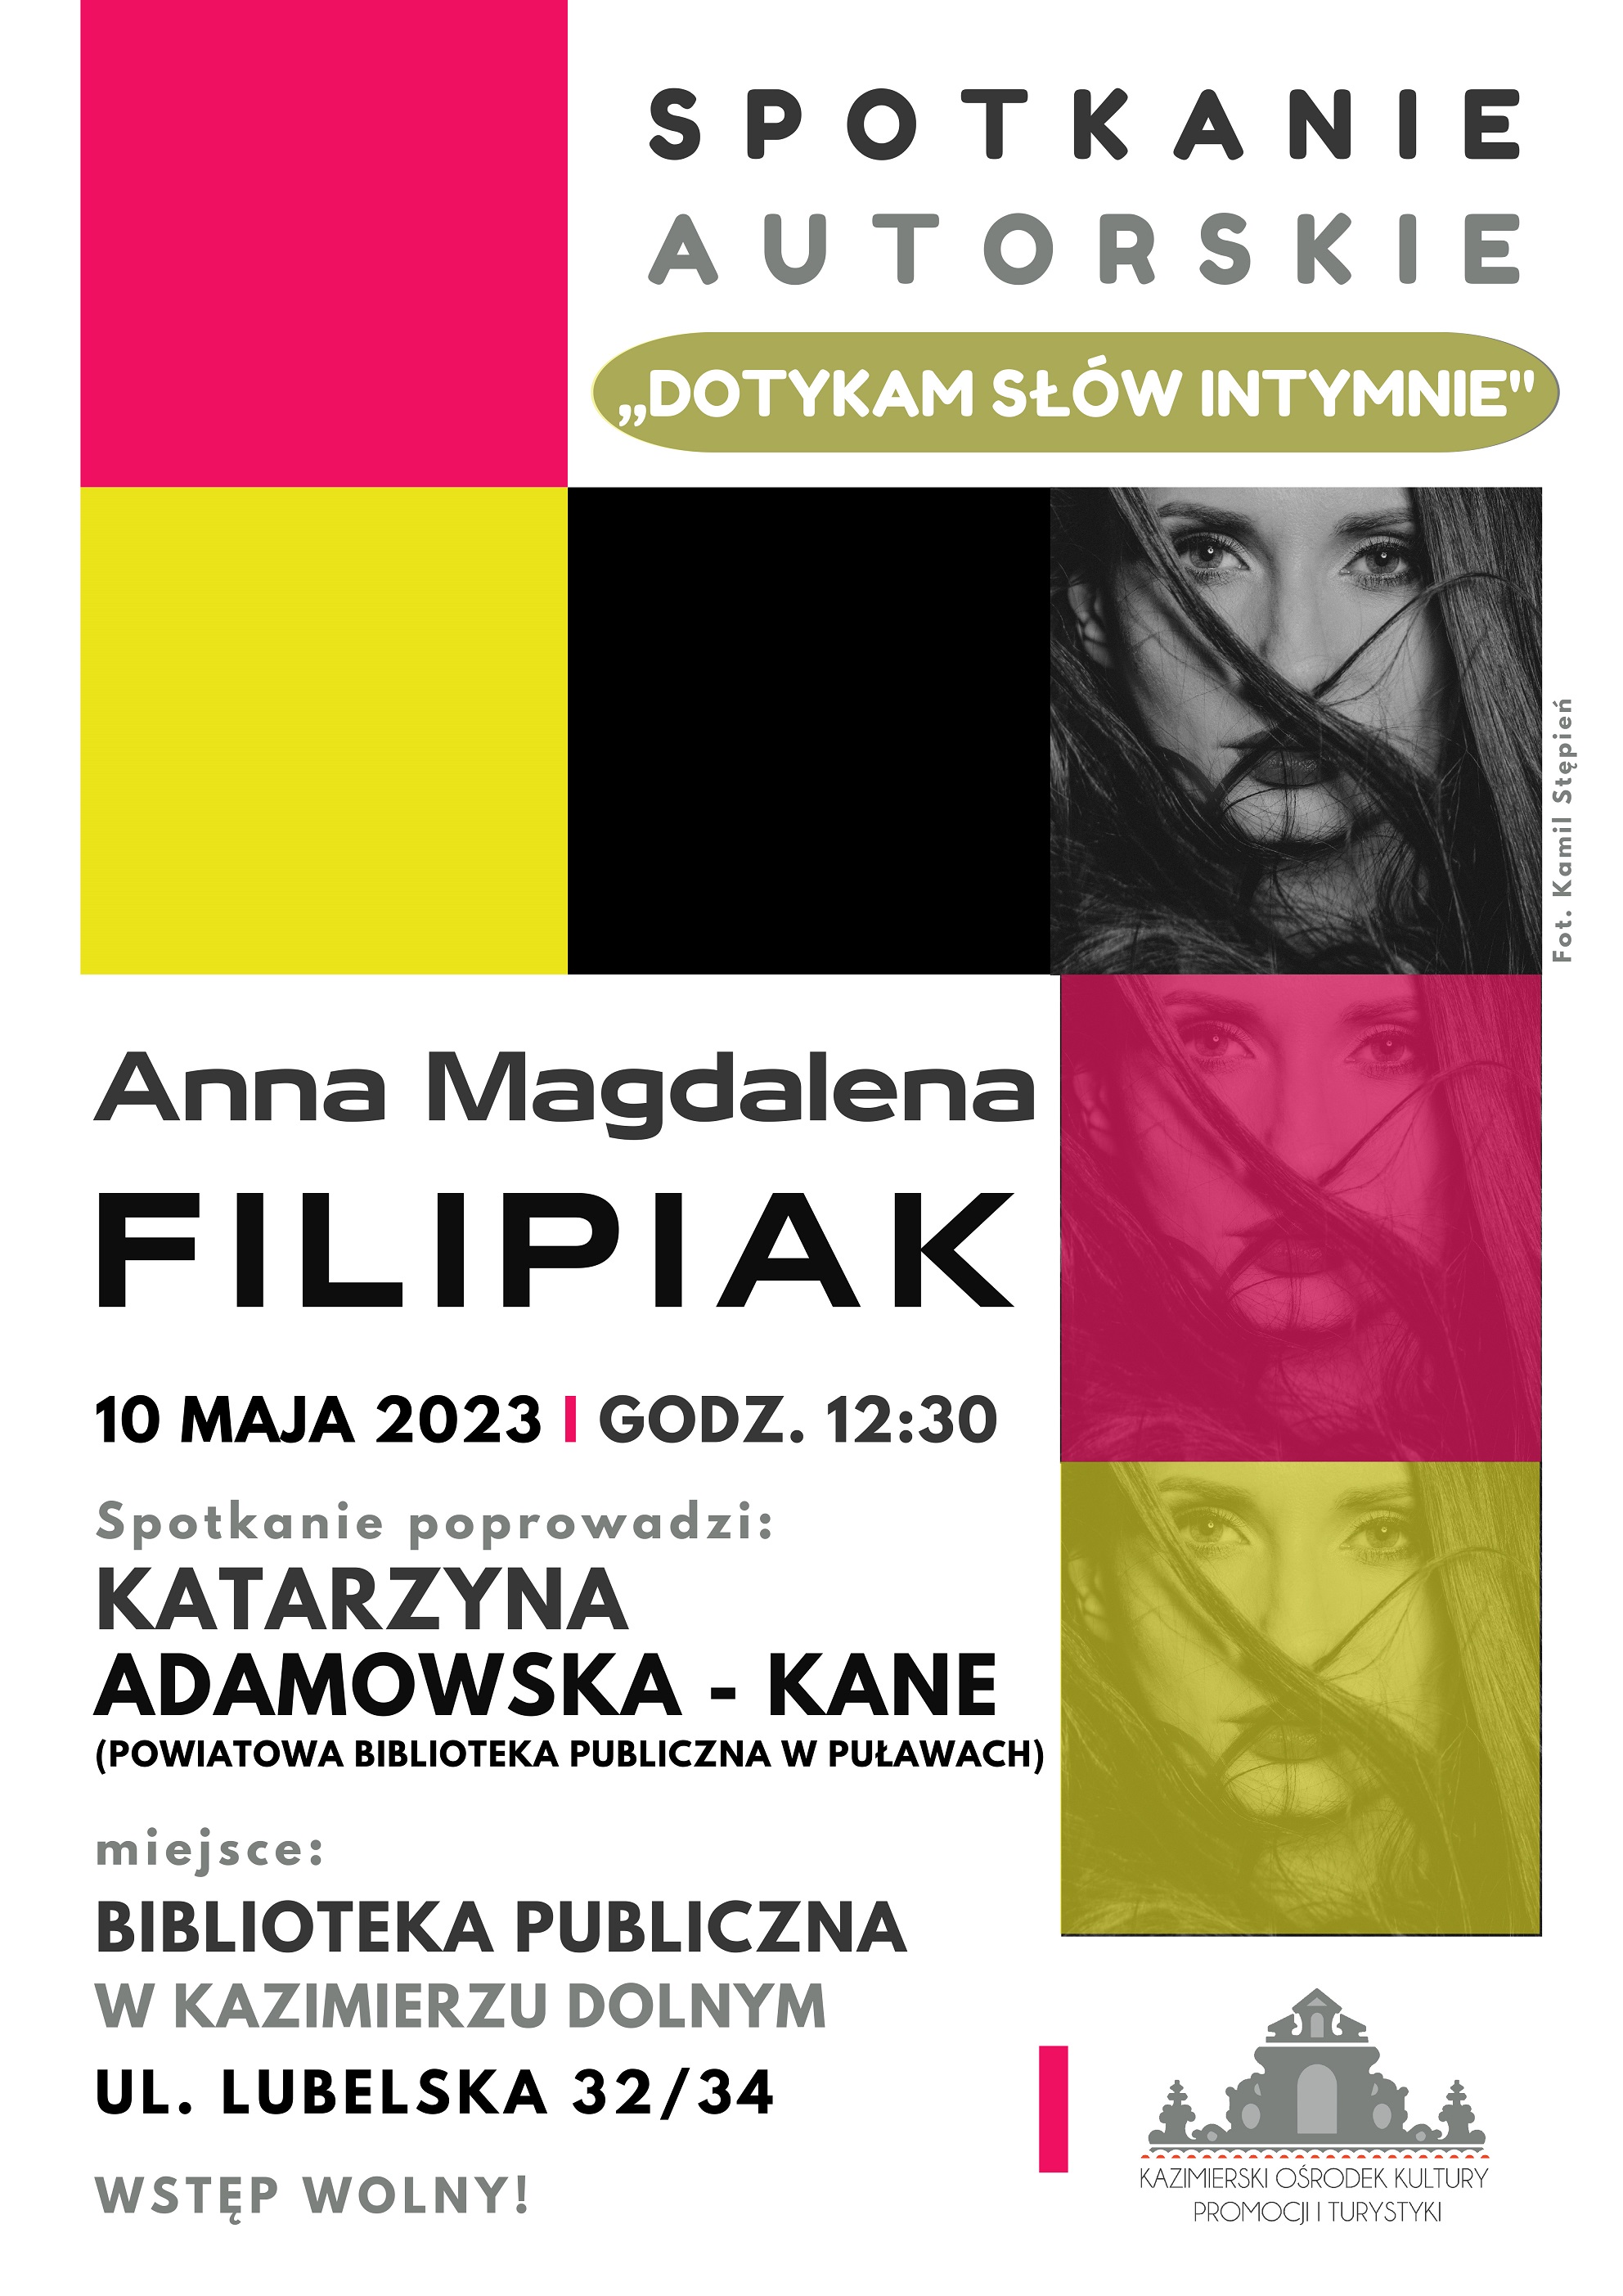 Plakat promujący spotkanie autorskie z Anną Magdaleną Filipiak w kazimierskiej bibliotece, które odbędzie się 10 maja 2023 r. o godz. 12.30. 